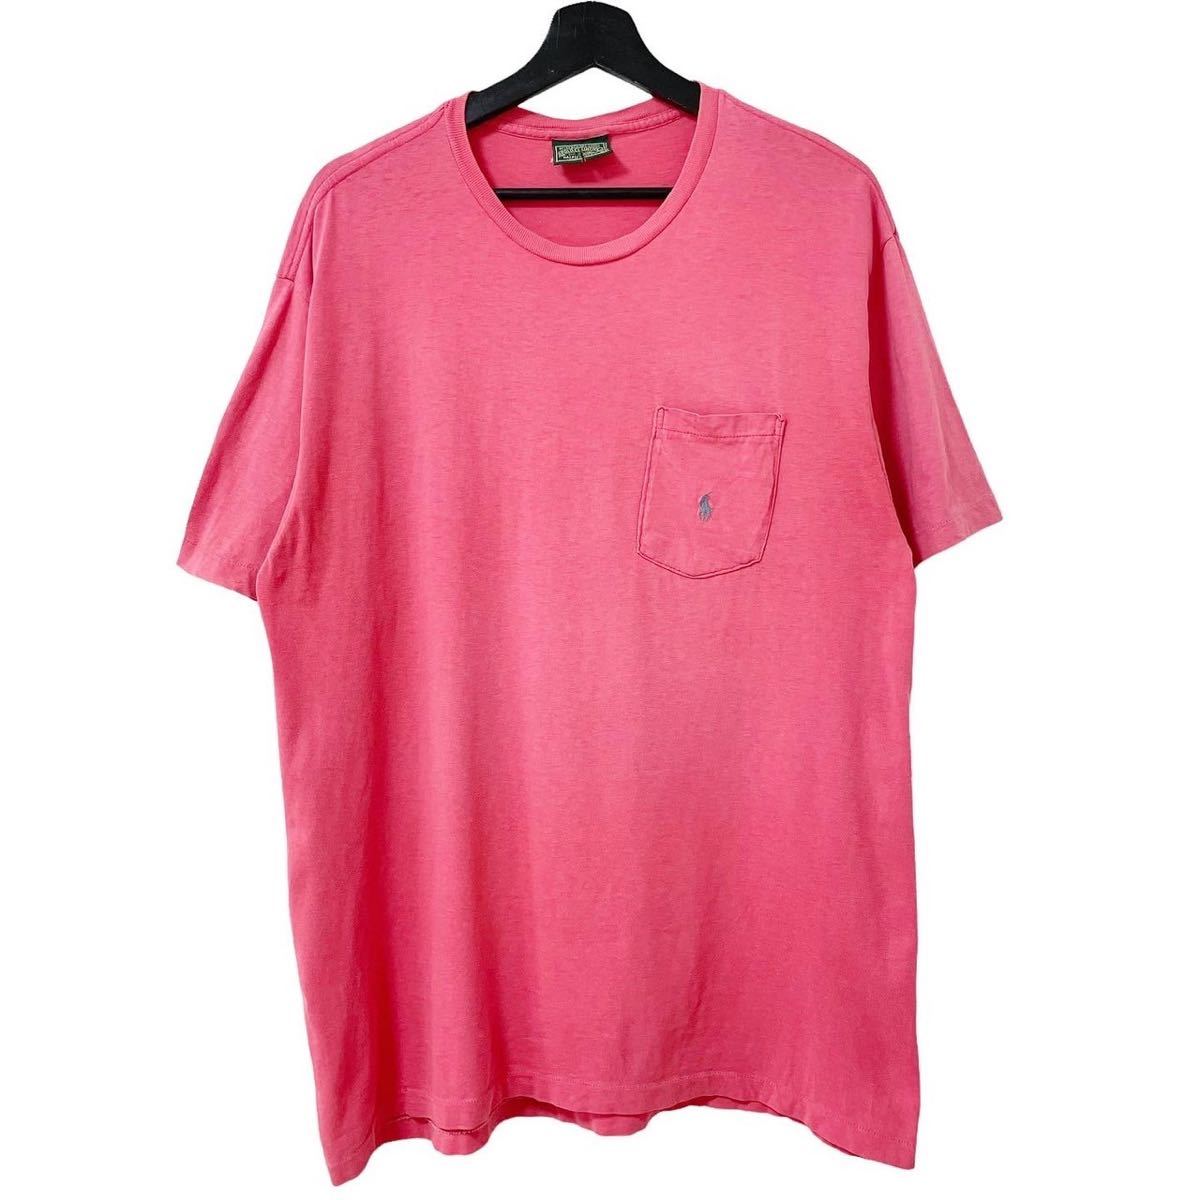 ■激レア■80s 90s USA製 RALPH LAUREN POLO COUNTRY ピンク 無地 ポケT Tシャツ M LXL相当 ラルフローレン ポロカントリー RRL ビンテージ